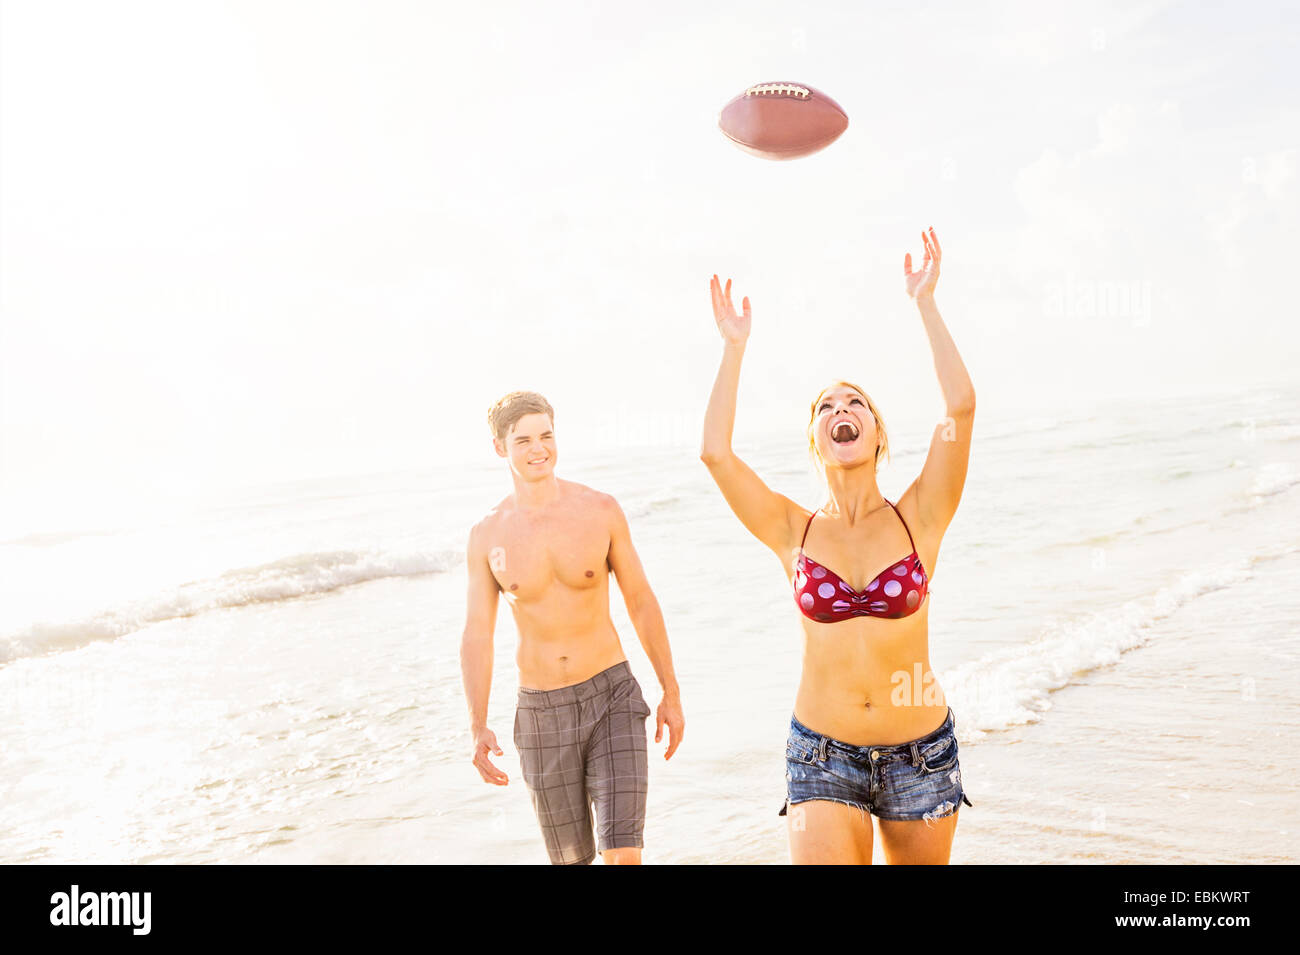 USA, Floride, Jupiter, jeune femme attraper football on beach Banque D'Images